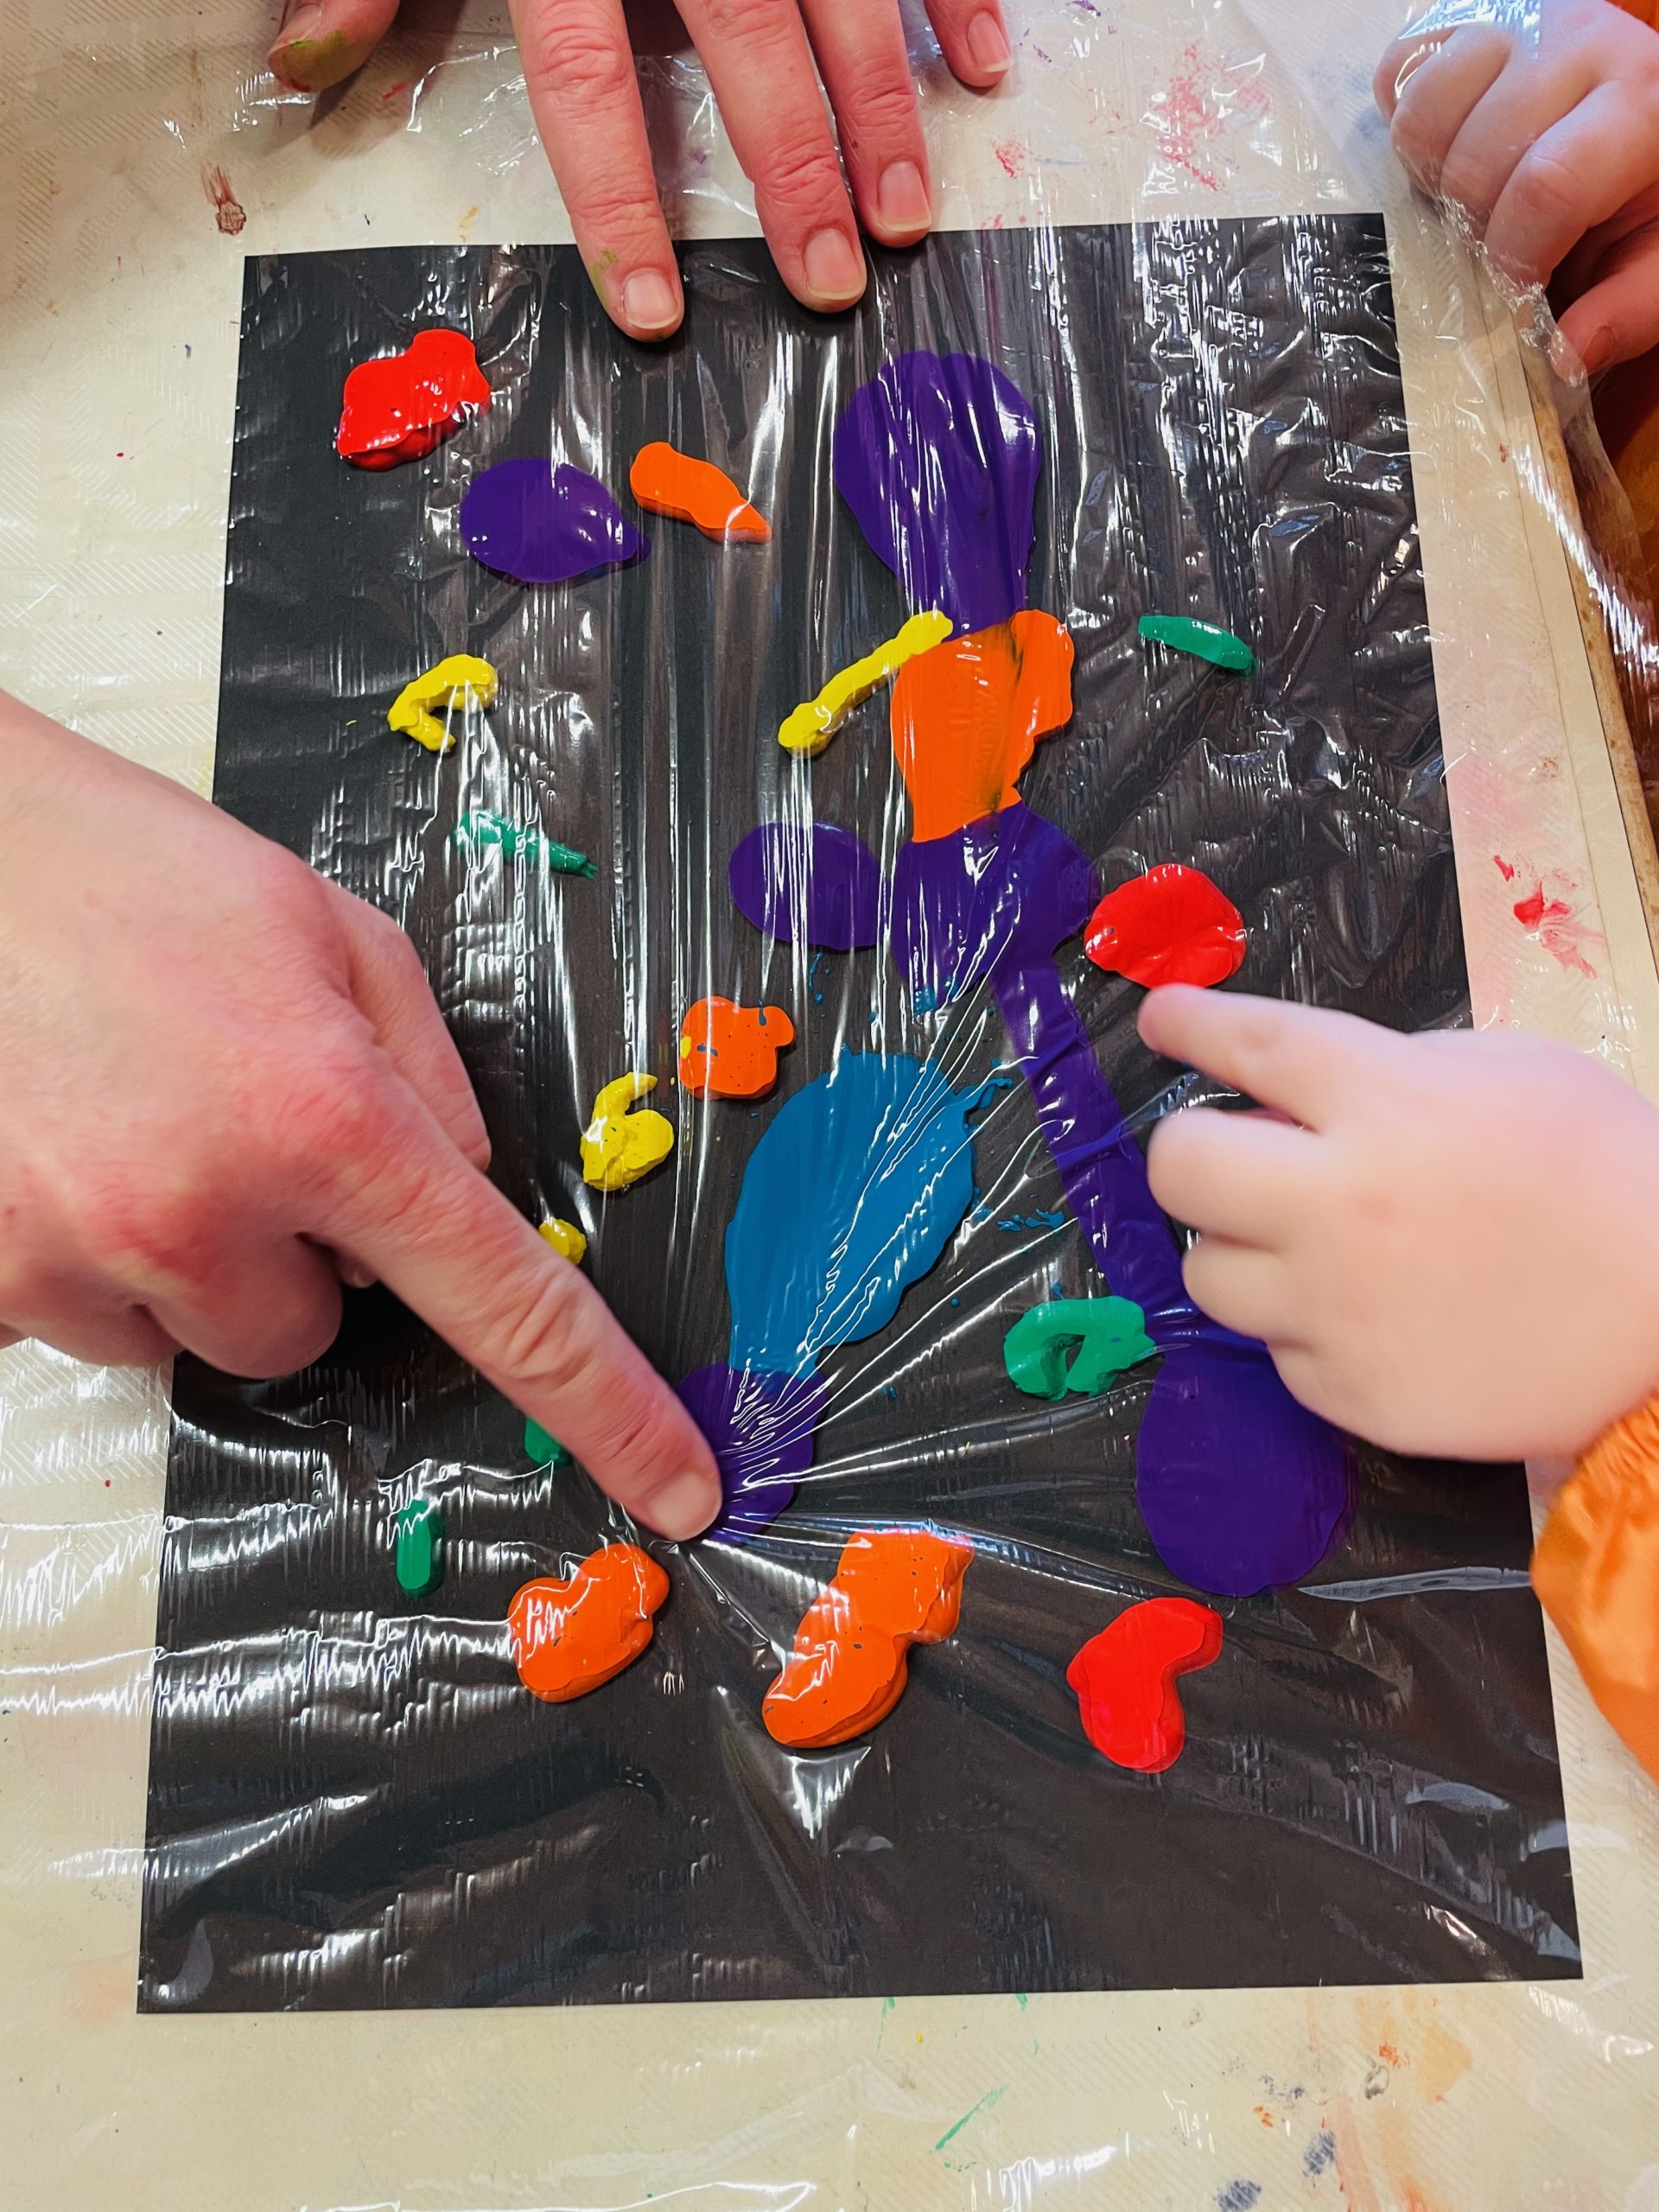 Bild zum Schritt 4 für die Kinder-Beschäftigung: 'Beginnt nun mit den Fingern die Farbtupfer zu verstreichen. ...'